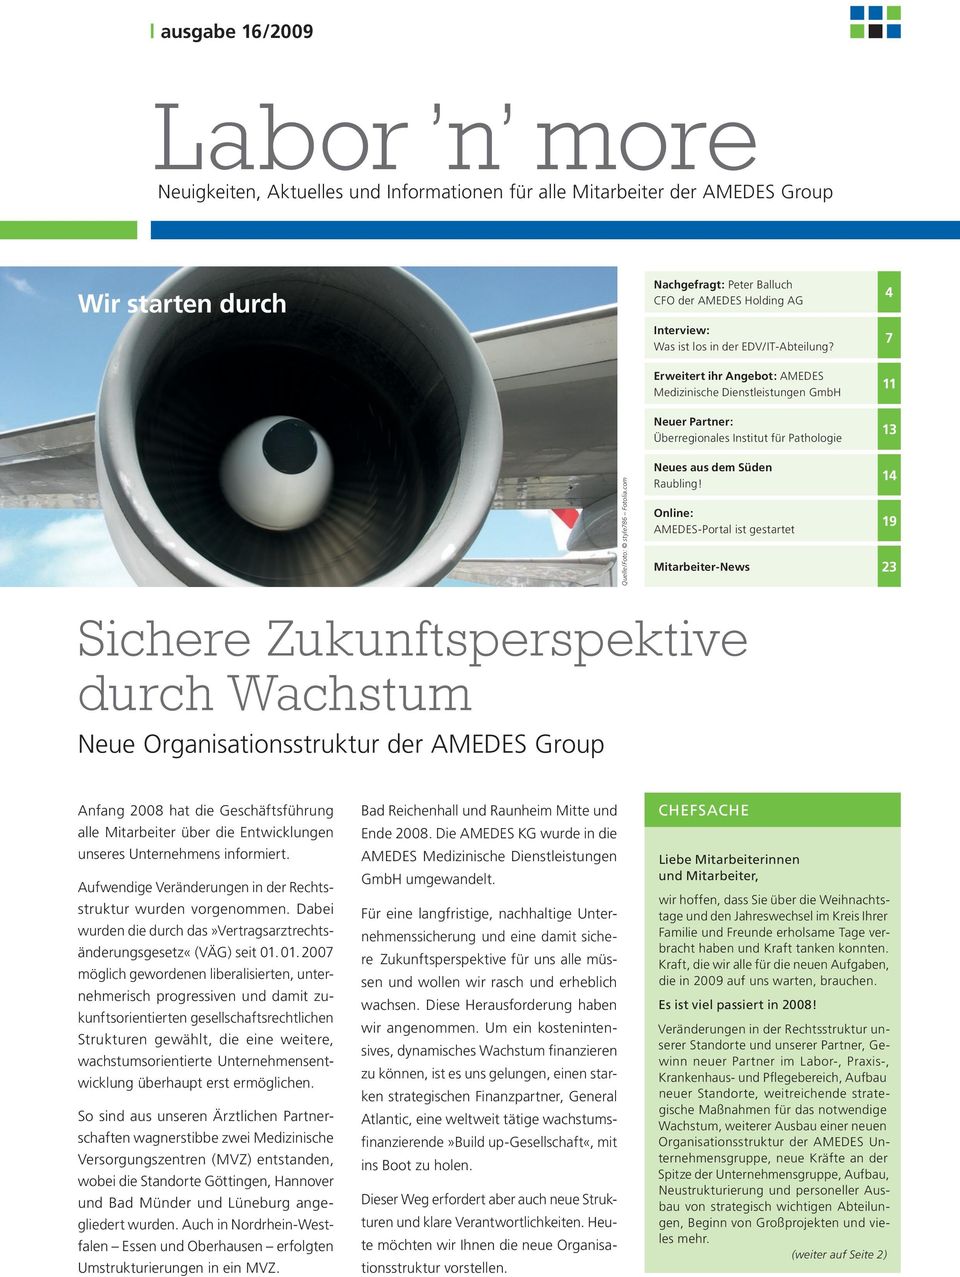 Erweitert ihr Angebot: AMEDES Medizinische Dienstleistungen GmbH 4 7 11 Neuer Partner: Überregionales Institut für Pathologie 13 Sichere Zukunftsperspektive durch Wachstum Neue Organisationsstruktur